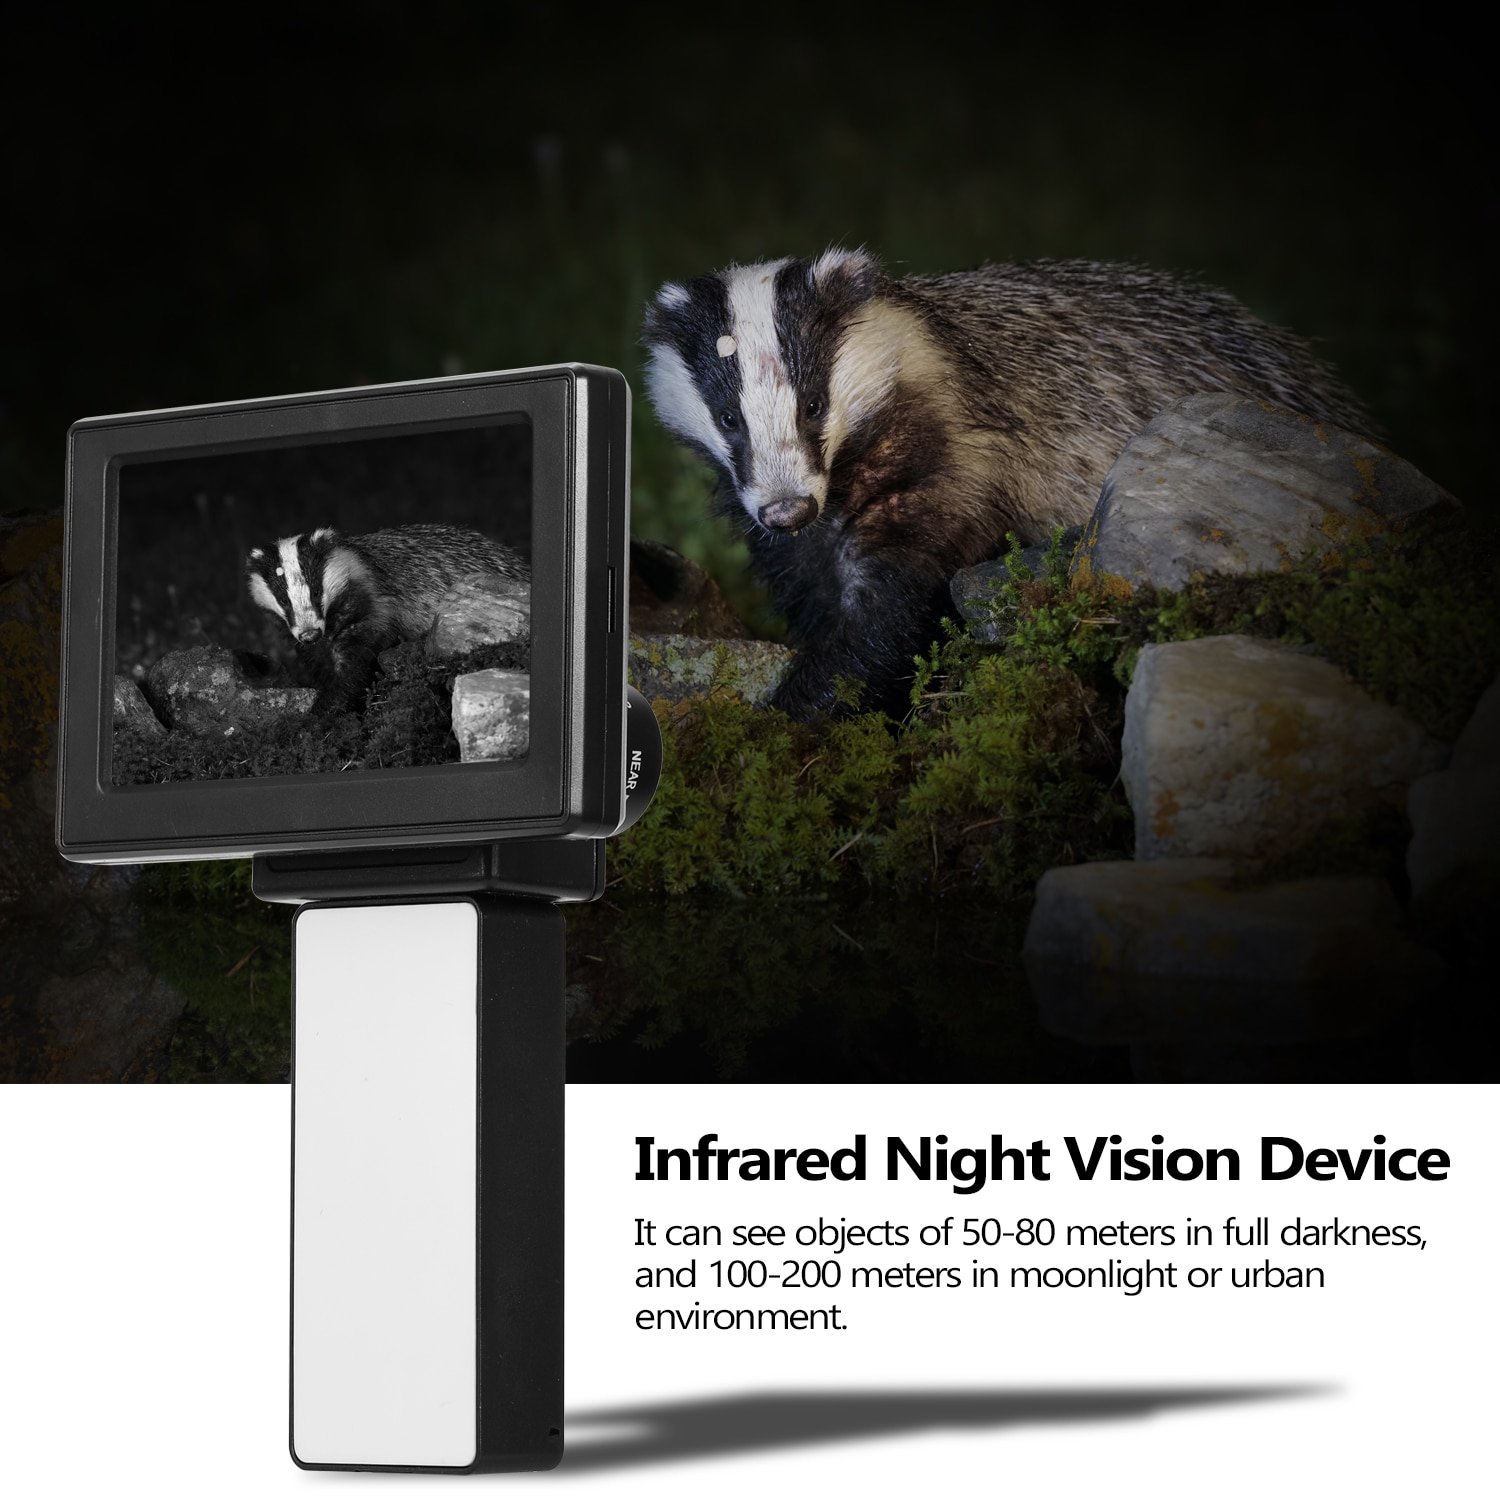 Håndholdt infrarød nattesyn enhed infrarød belyst nattesynsskærm med 12mm linse og 2 stk infrarød udfyldningslys